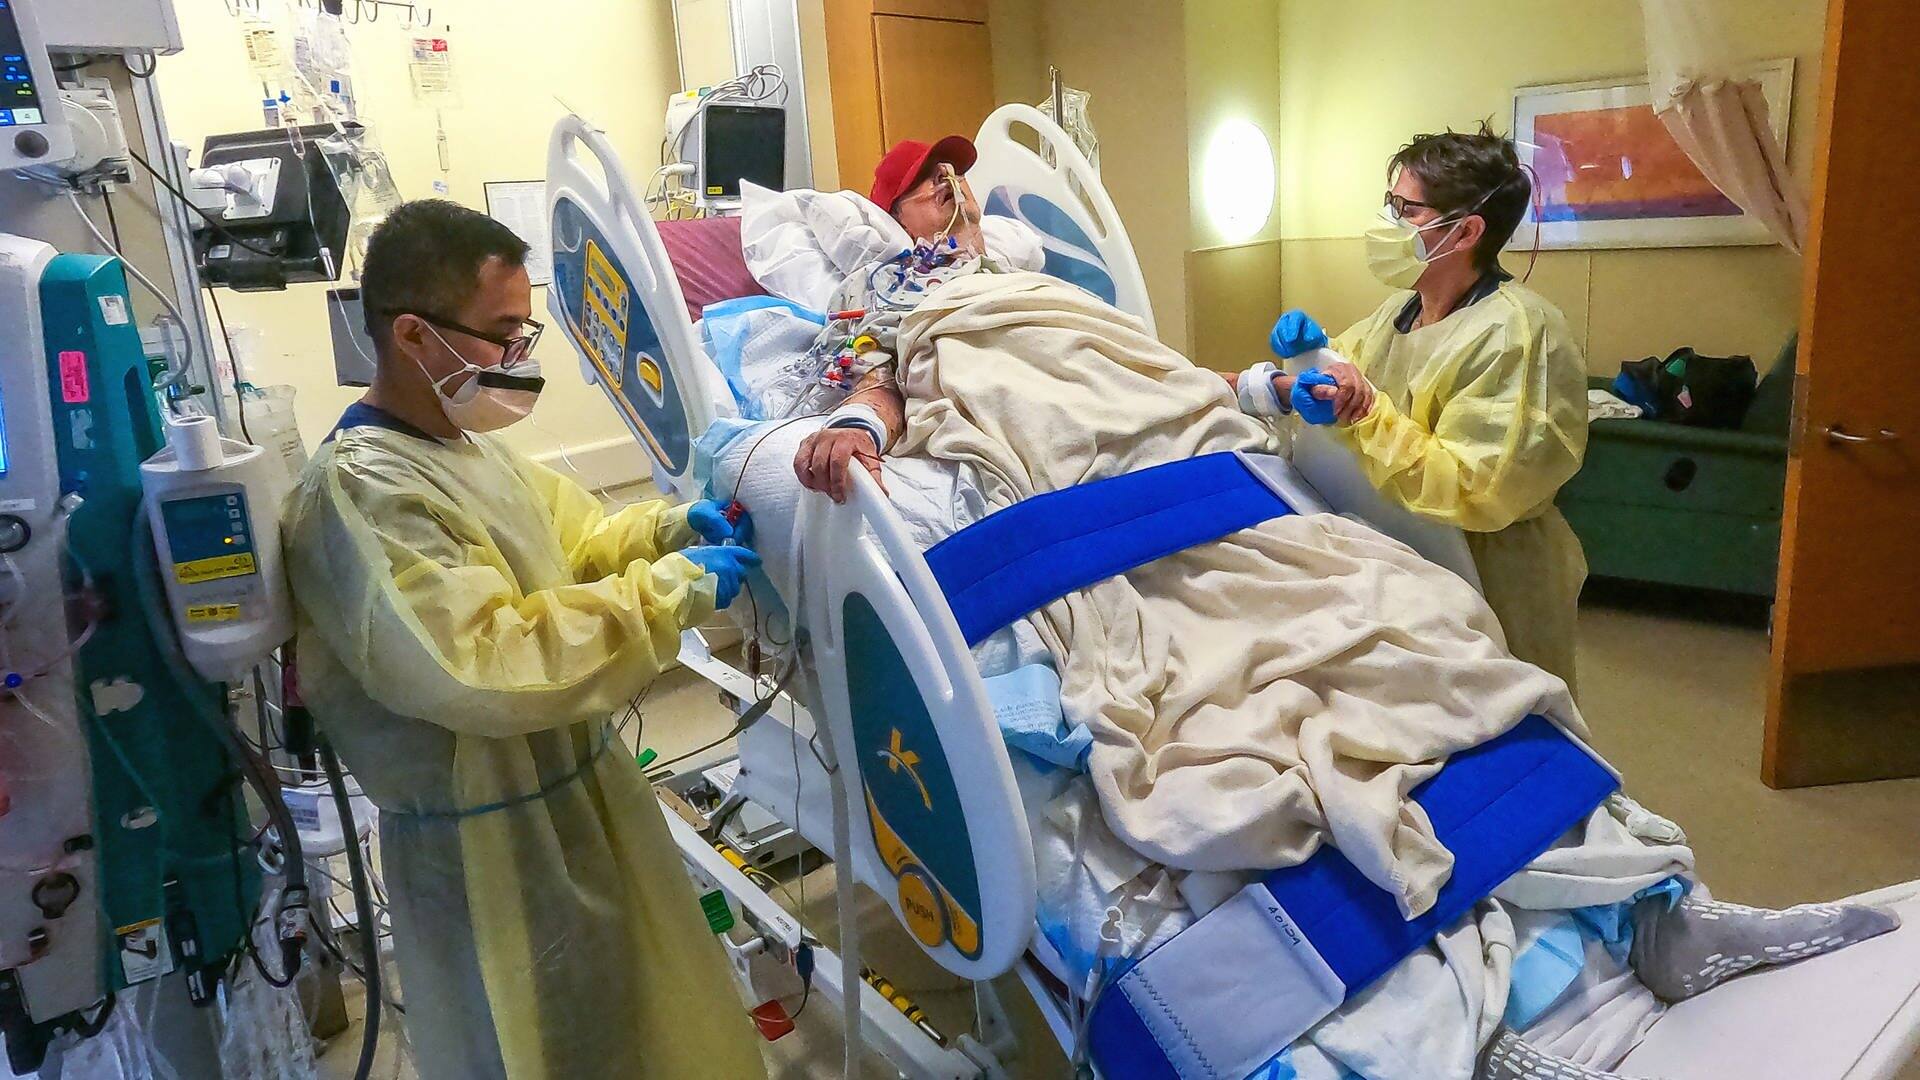 David Bennett in seinem aufgerichteten Klinikbett, rechts und links von ihm jeweils ein Physiotherapeut. (Foto: dpa Bildfunk, picture alliance/dpa/UMSOM Public Affairs | Tom Jemski)